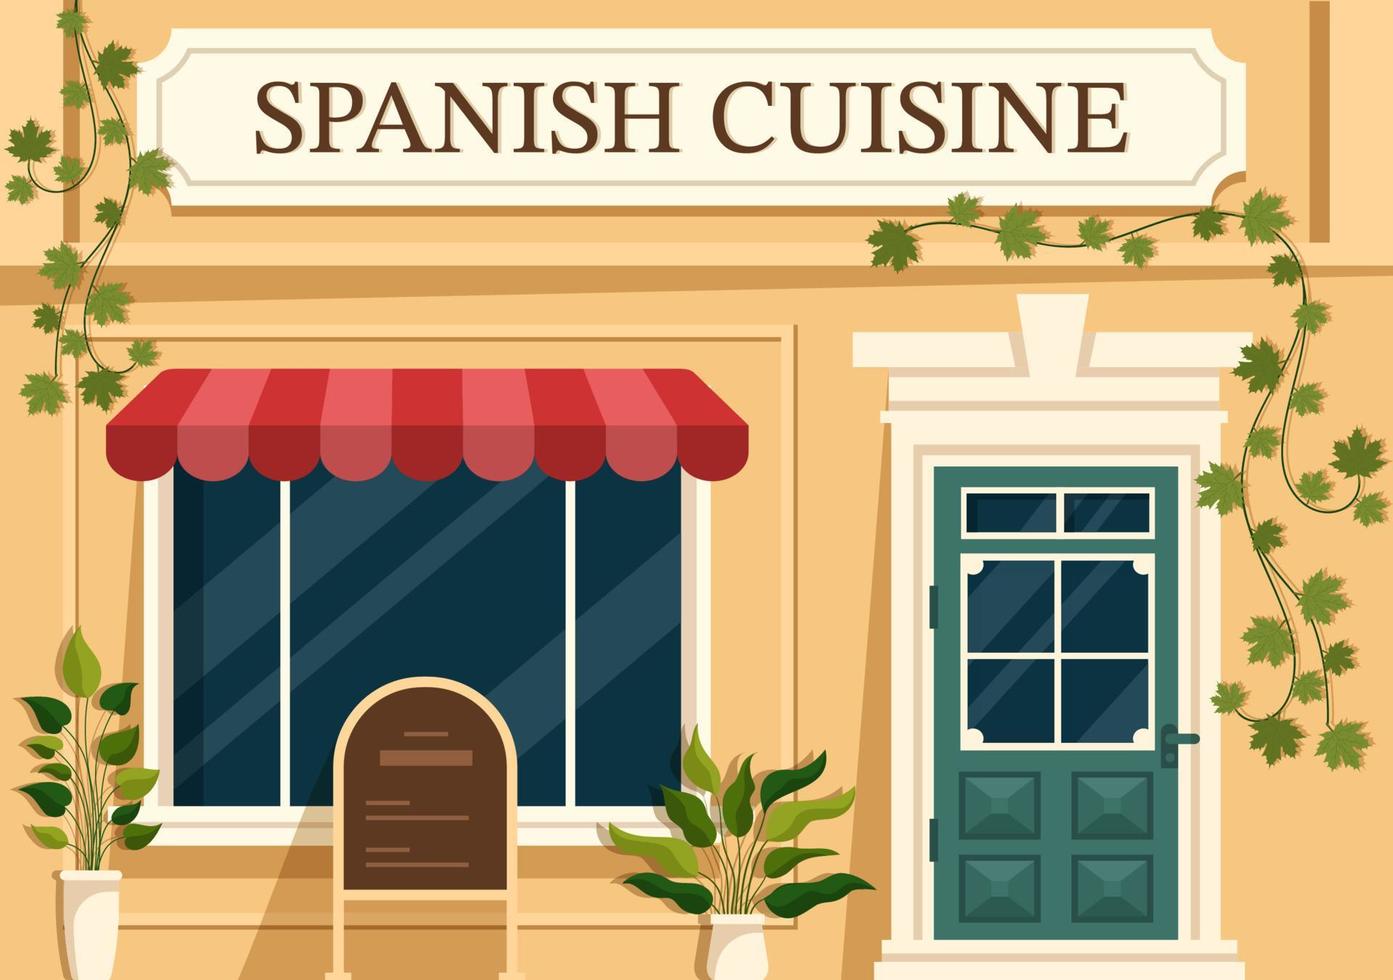 spanisches essen küche menü restaurant mit verschiedenen traditionellen gerichtrezepten auf flacher handgezeichneter vorlagenillustration der karikatur vektor